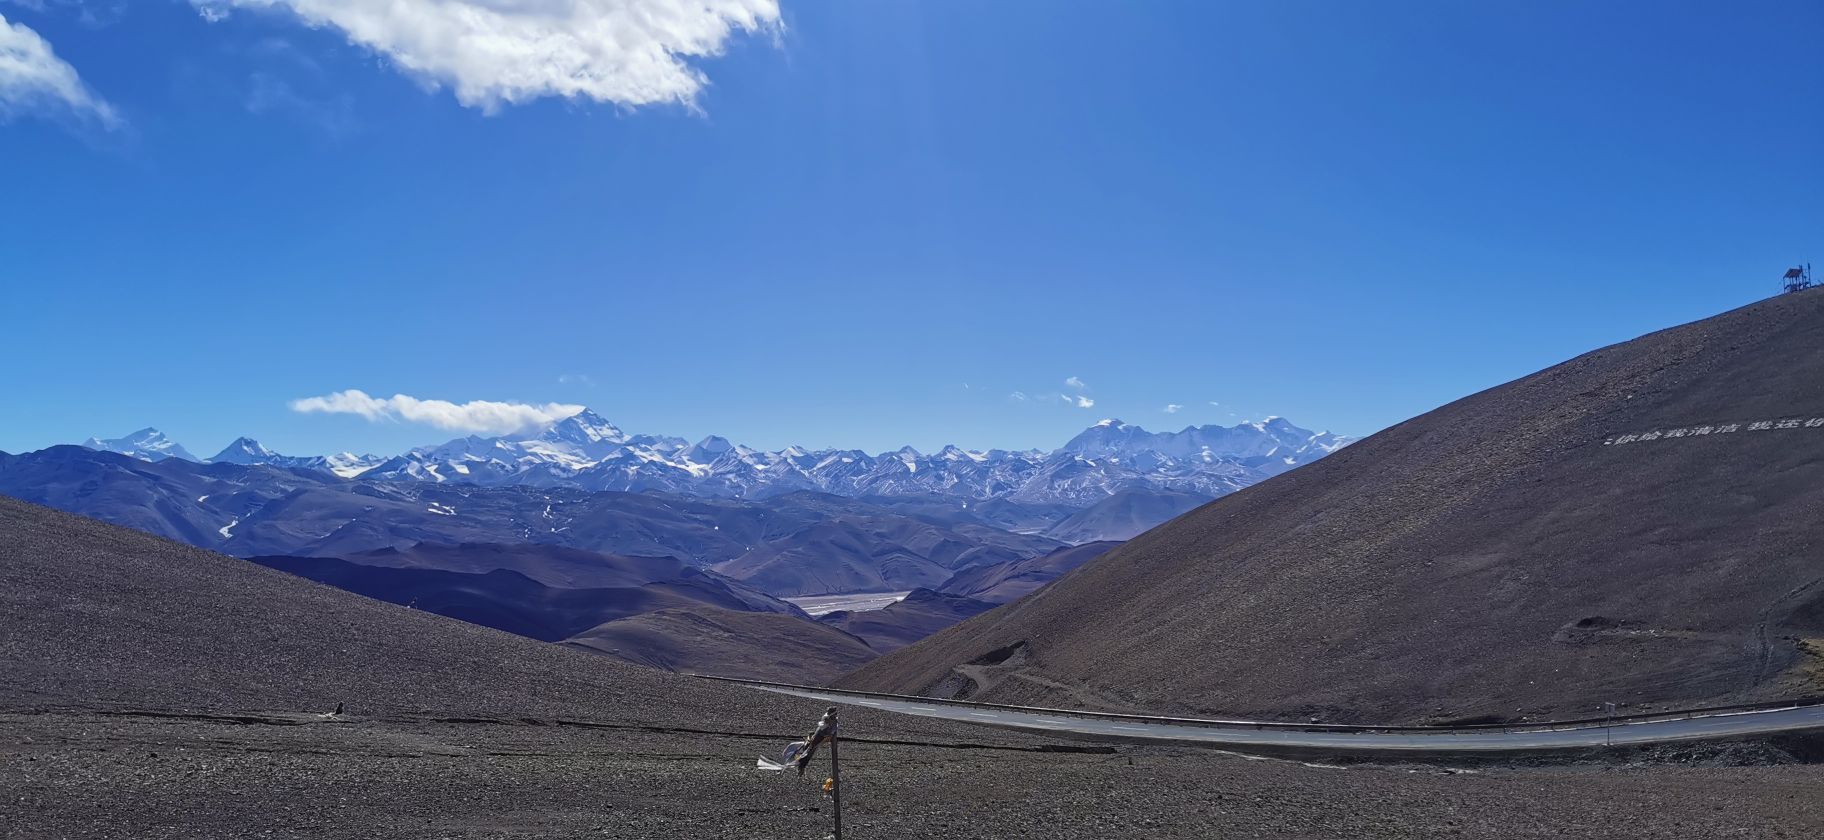 珠穆朗玛峰观景台